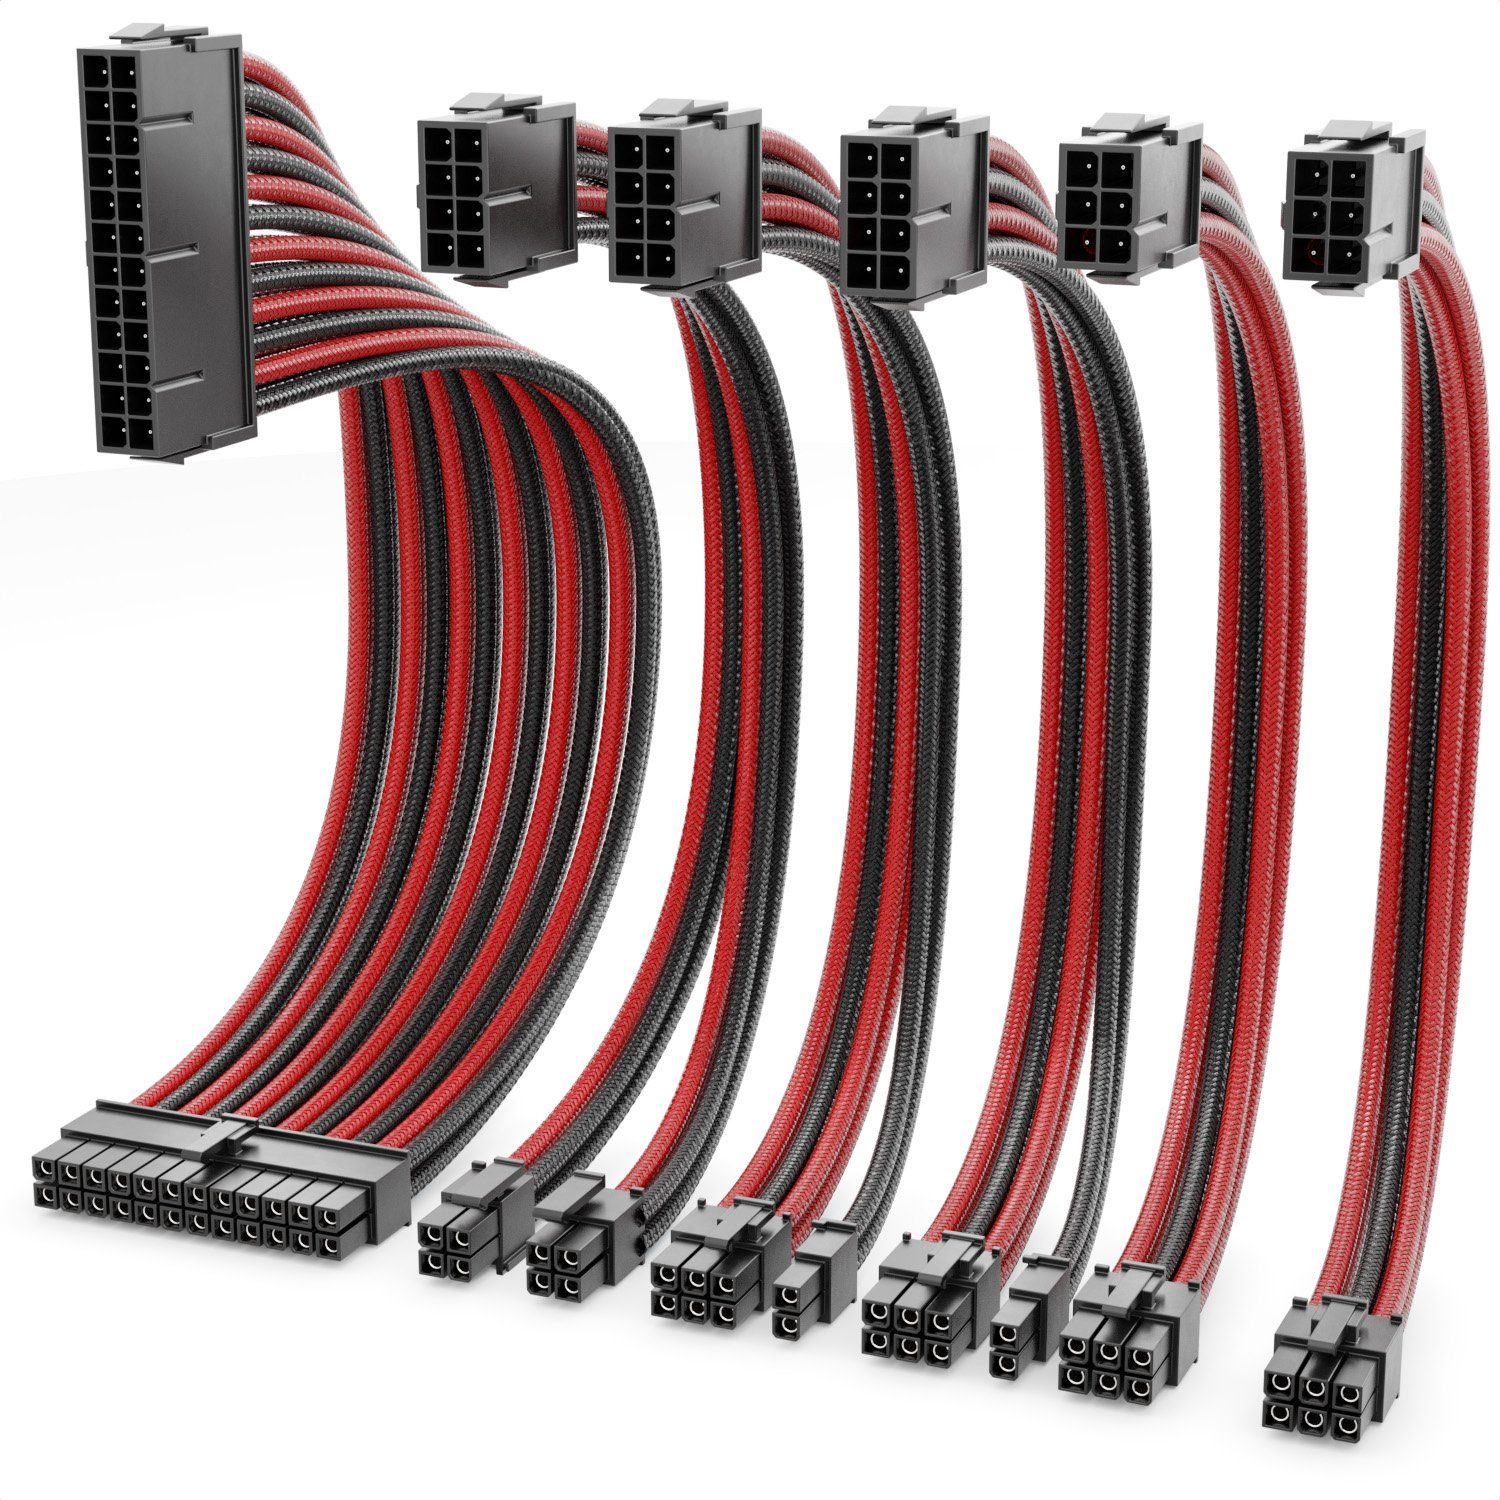 deleyCON deleyCON Netzteil Kabel Set 6-Teilig 30cm Computer Motherboard 18  AWG Computer-Kabel